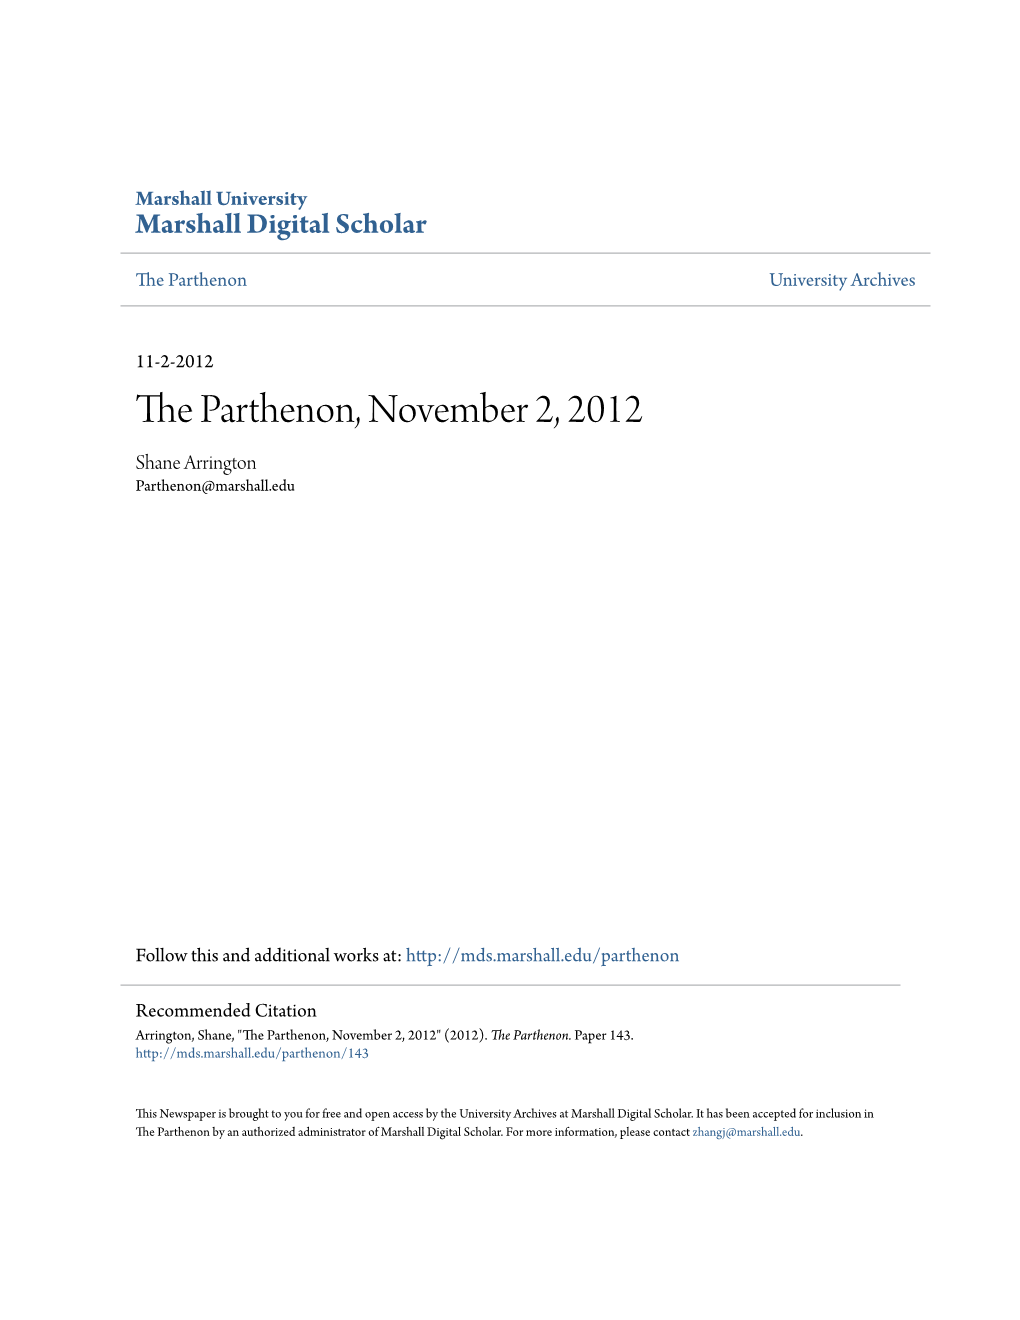 The Parthenon, November 2, 2012